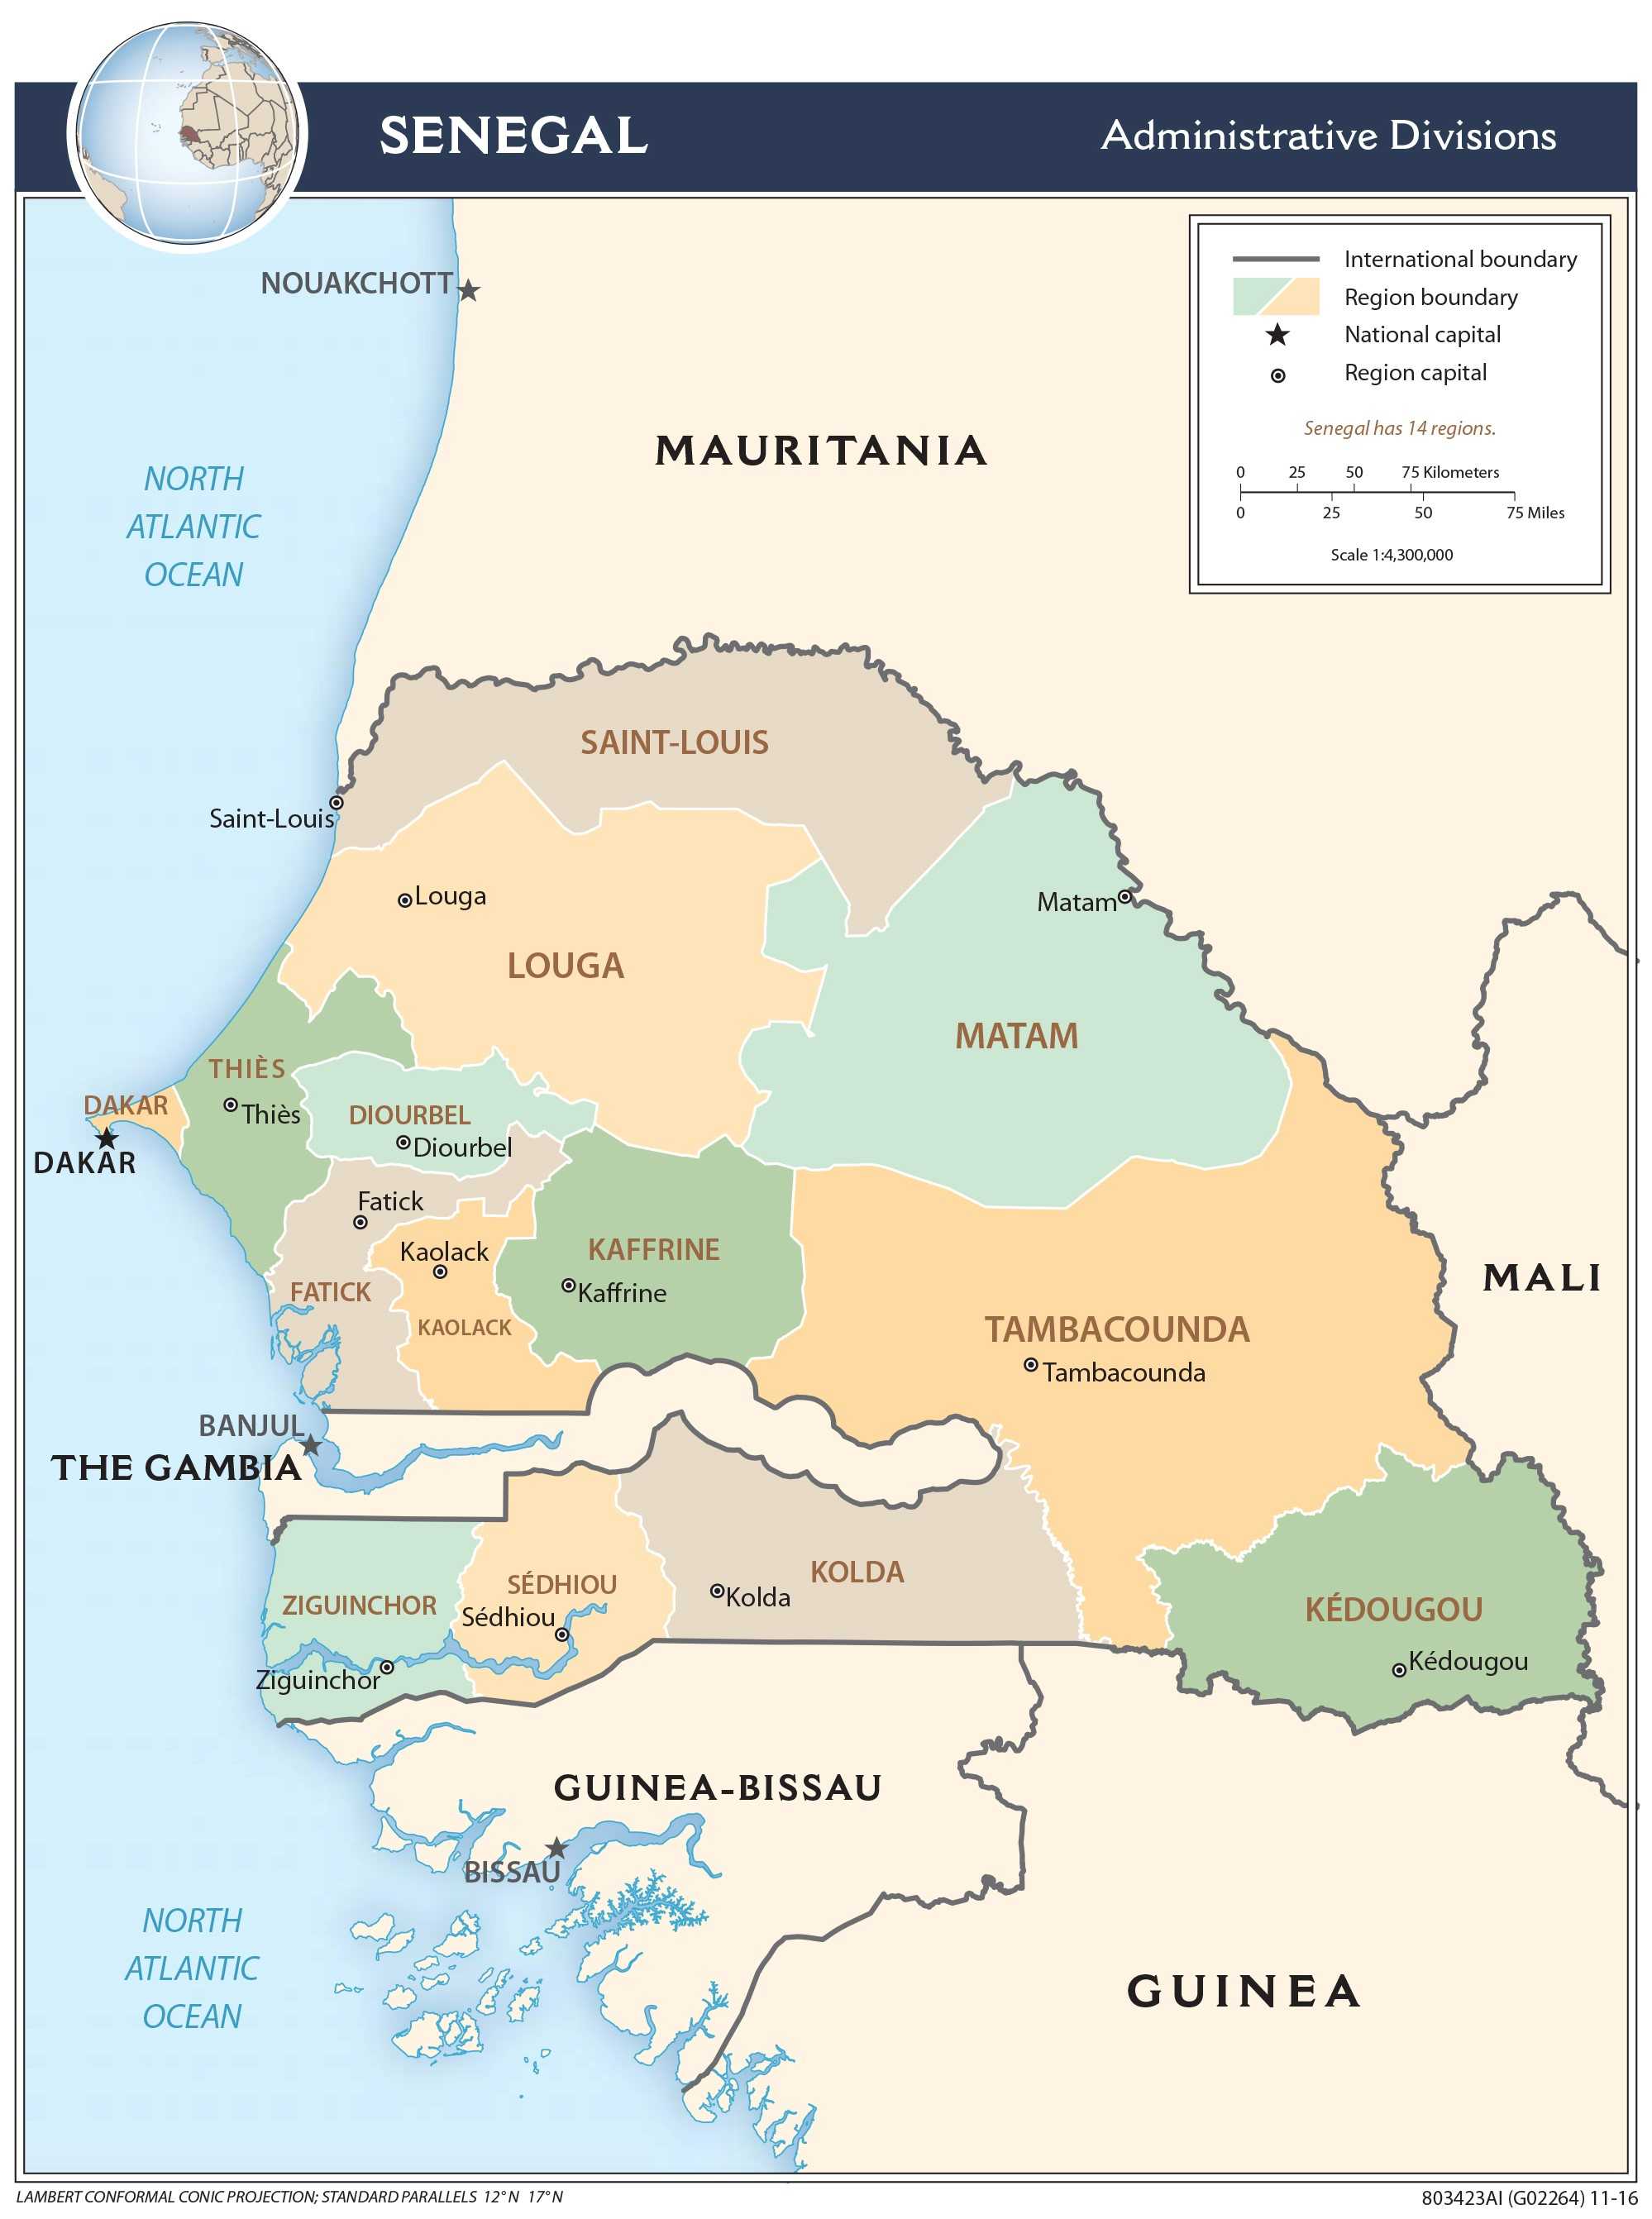 Administrative map of Senegal.